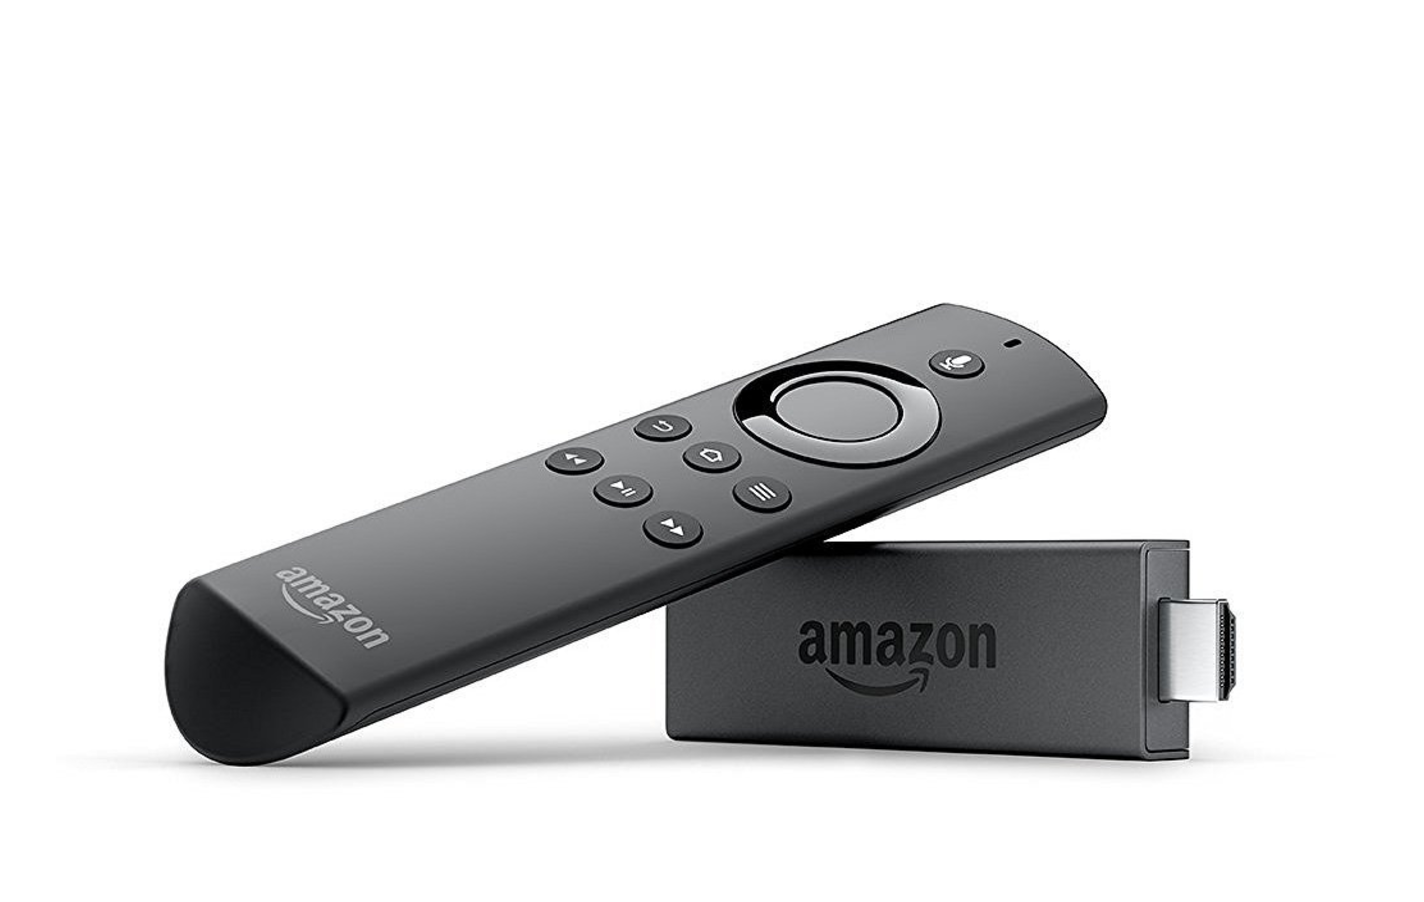 Amazonが発表したFire TV Stick (New モデル)、新規購入なら「買い」だと思う。